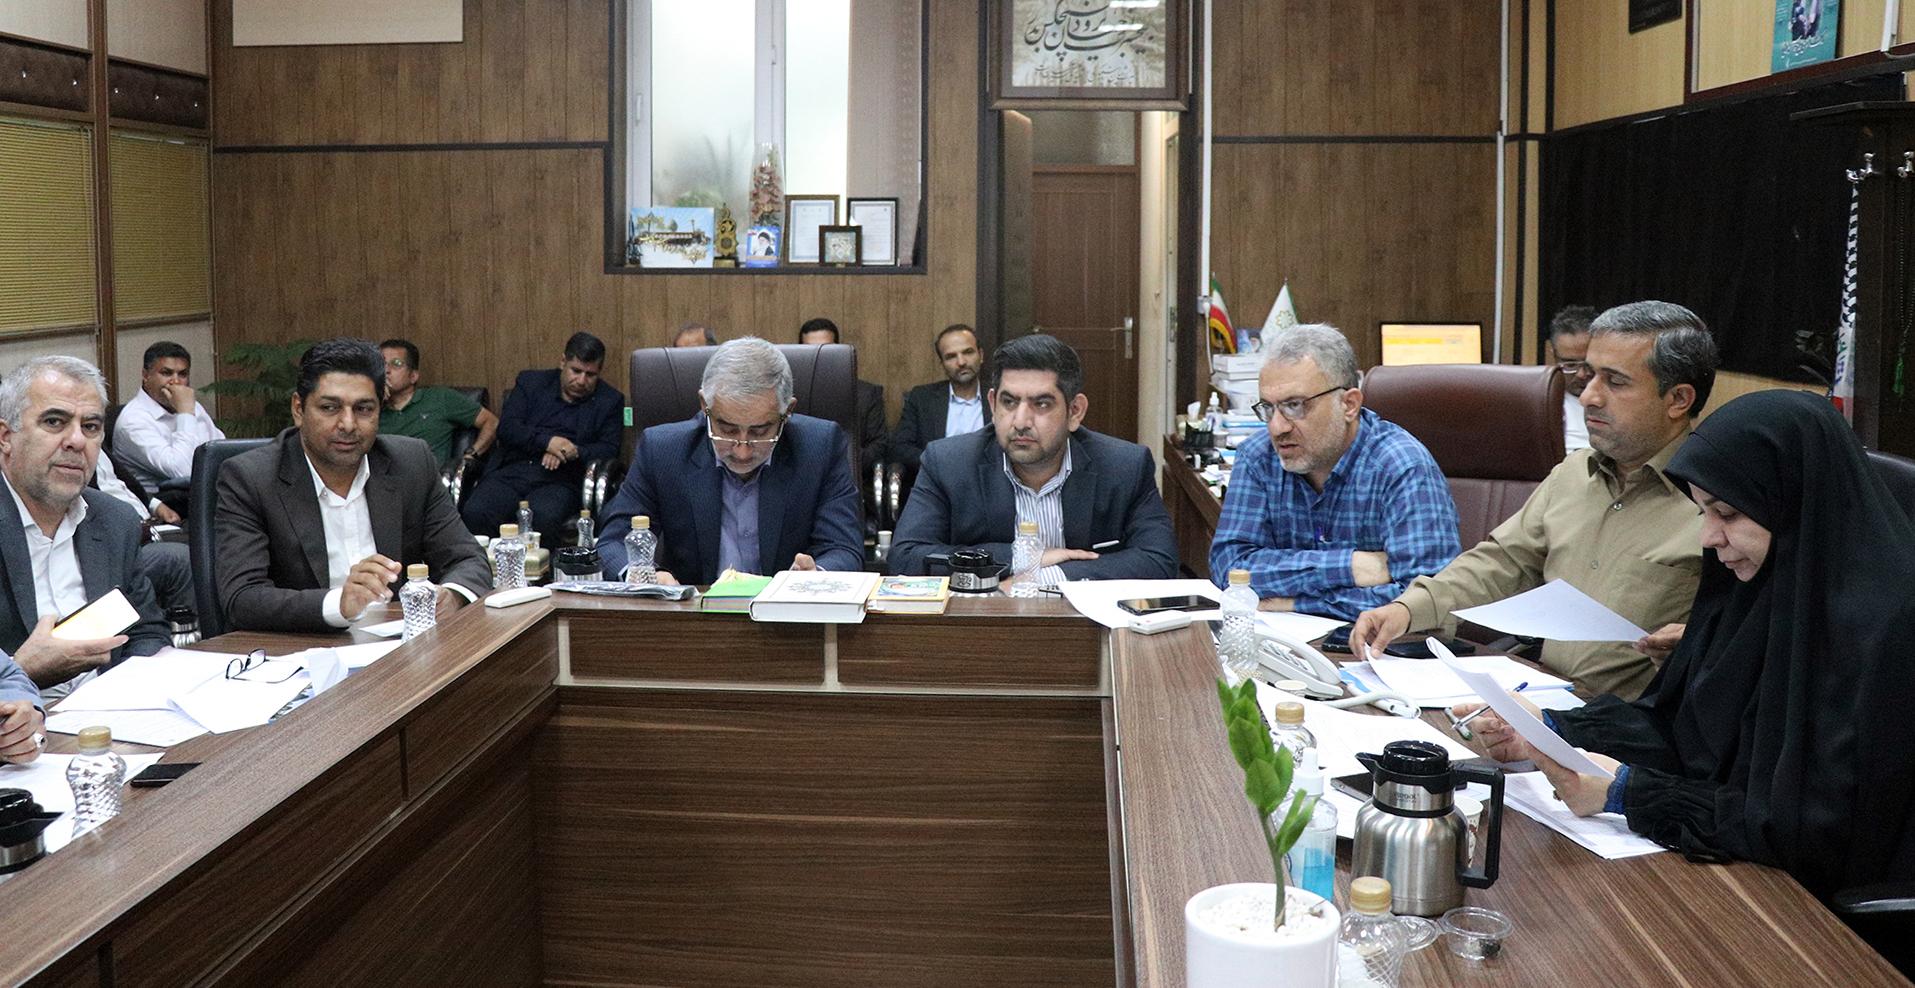 ادامه جهاد عمرانی و خدمت رسانی در منطقه ۱۱ شهرداری شیراز، با اجرای بیش از ۸۰ پروژه عمرانی ریز و درشت در سال پیش رو